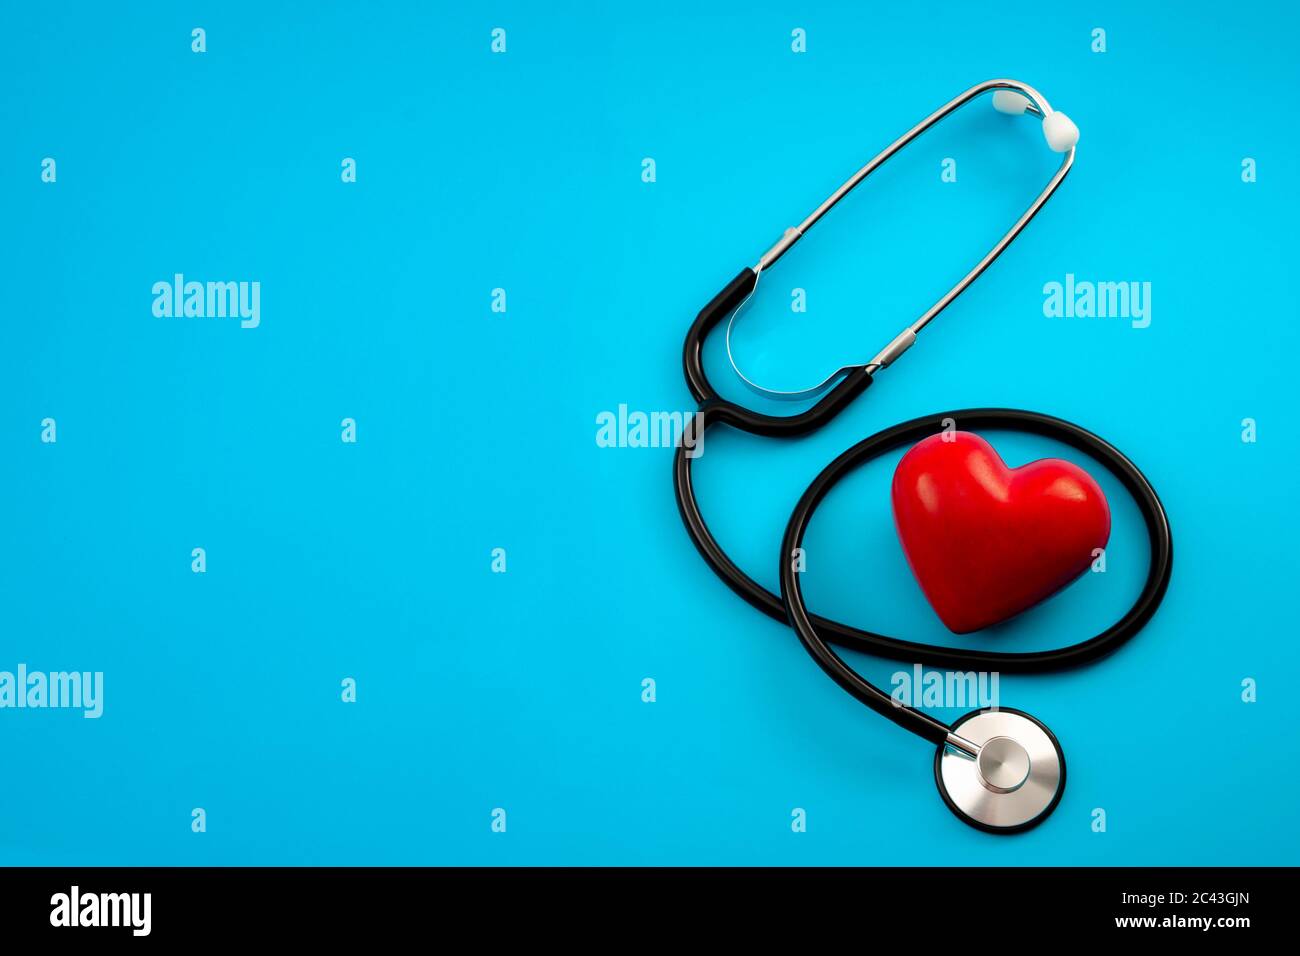 Controllo annuale della salute, diagnosi di malattia, medicina sanitaria e cardiologia concetto con un cuore rosso e uno stetoscopio isolato su un ospedale blu b Foto Stock